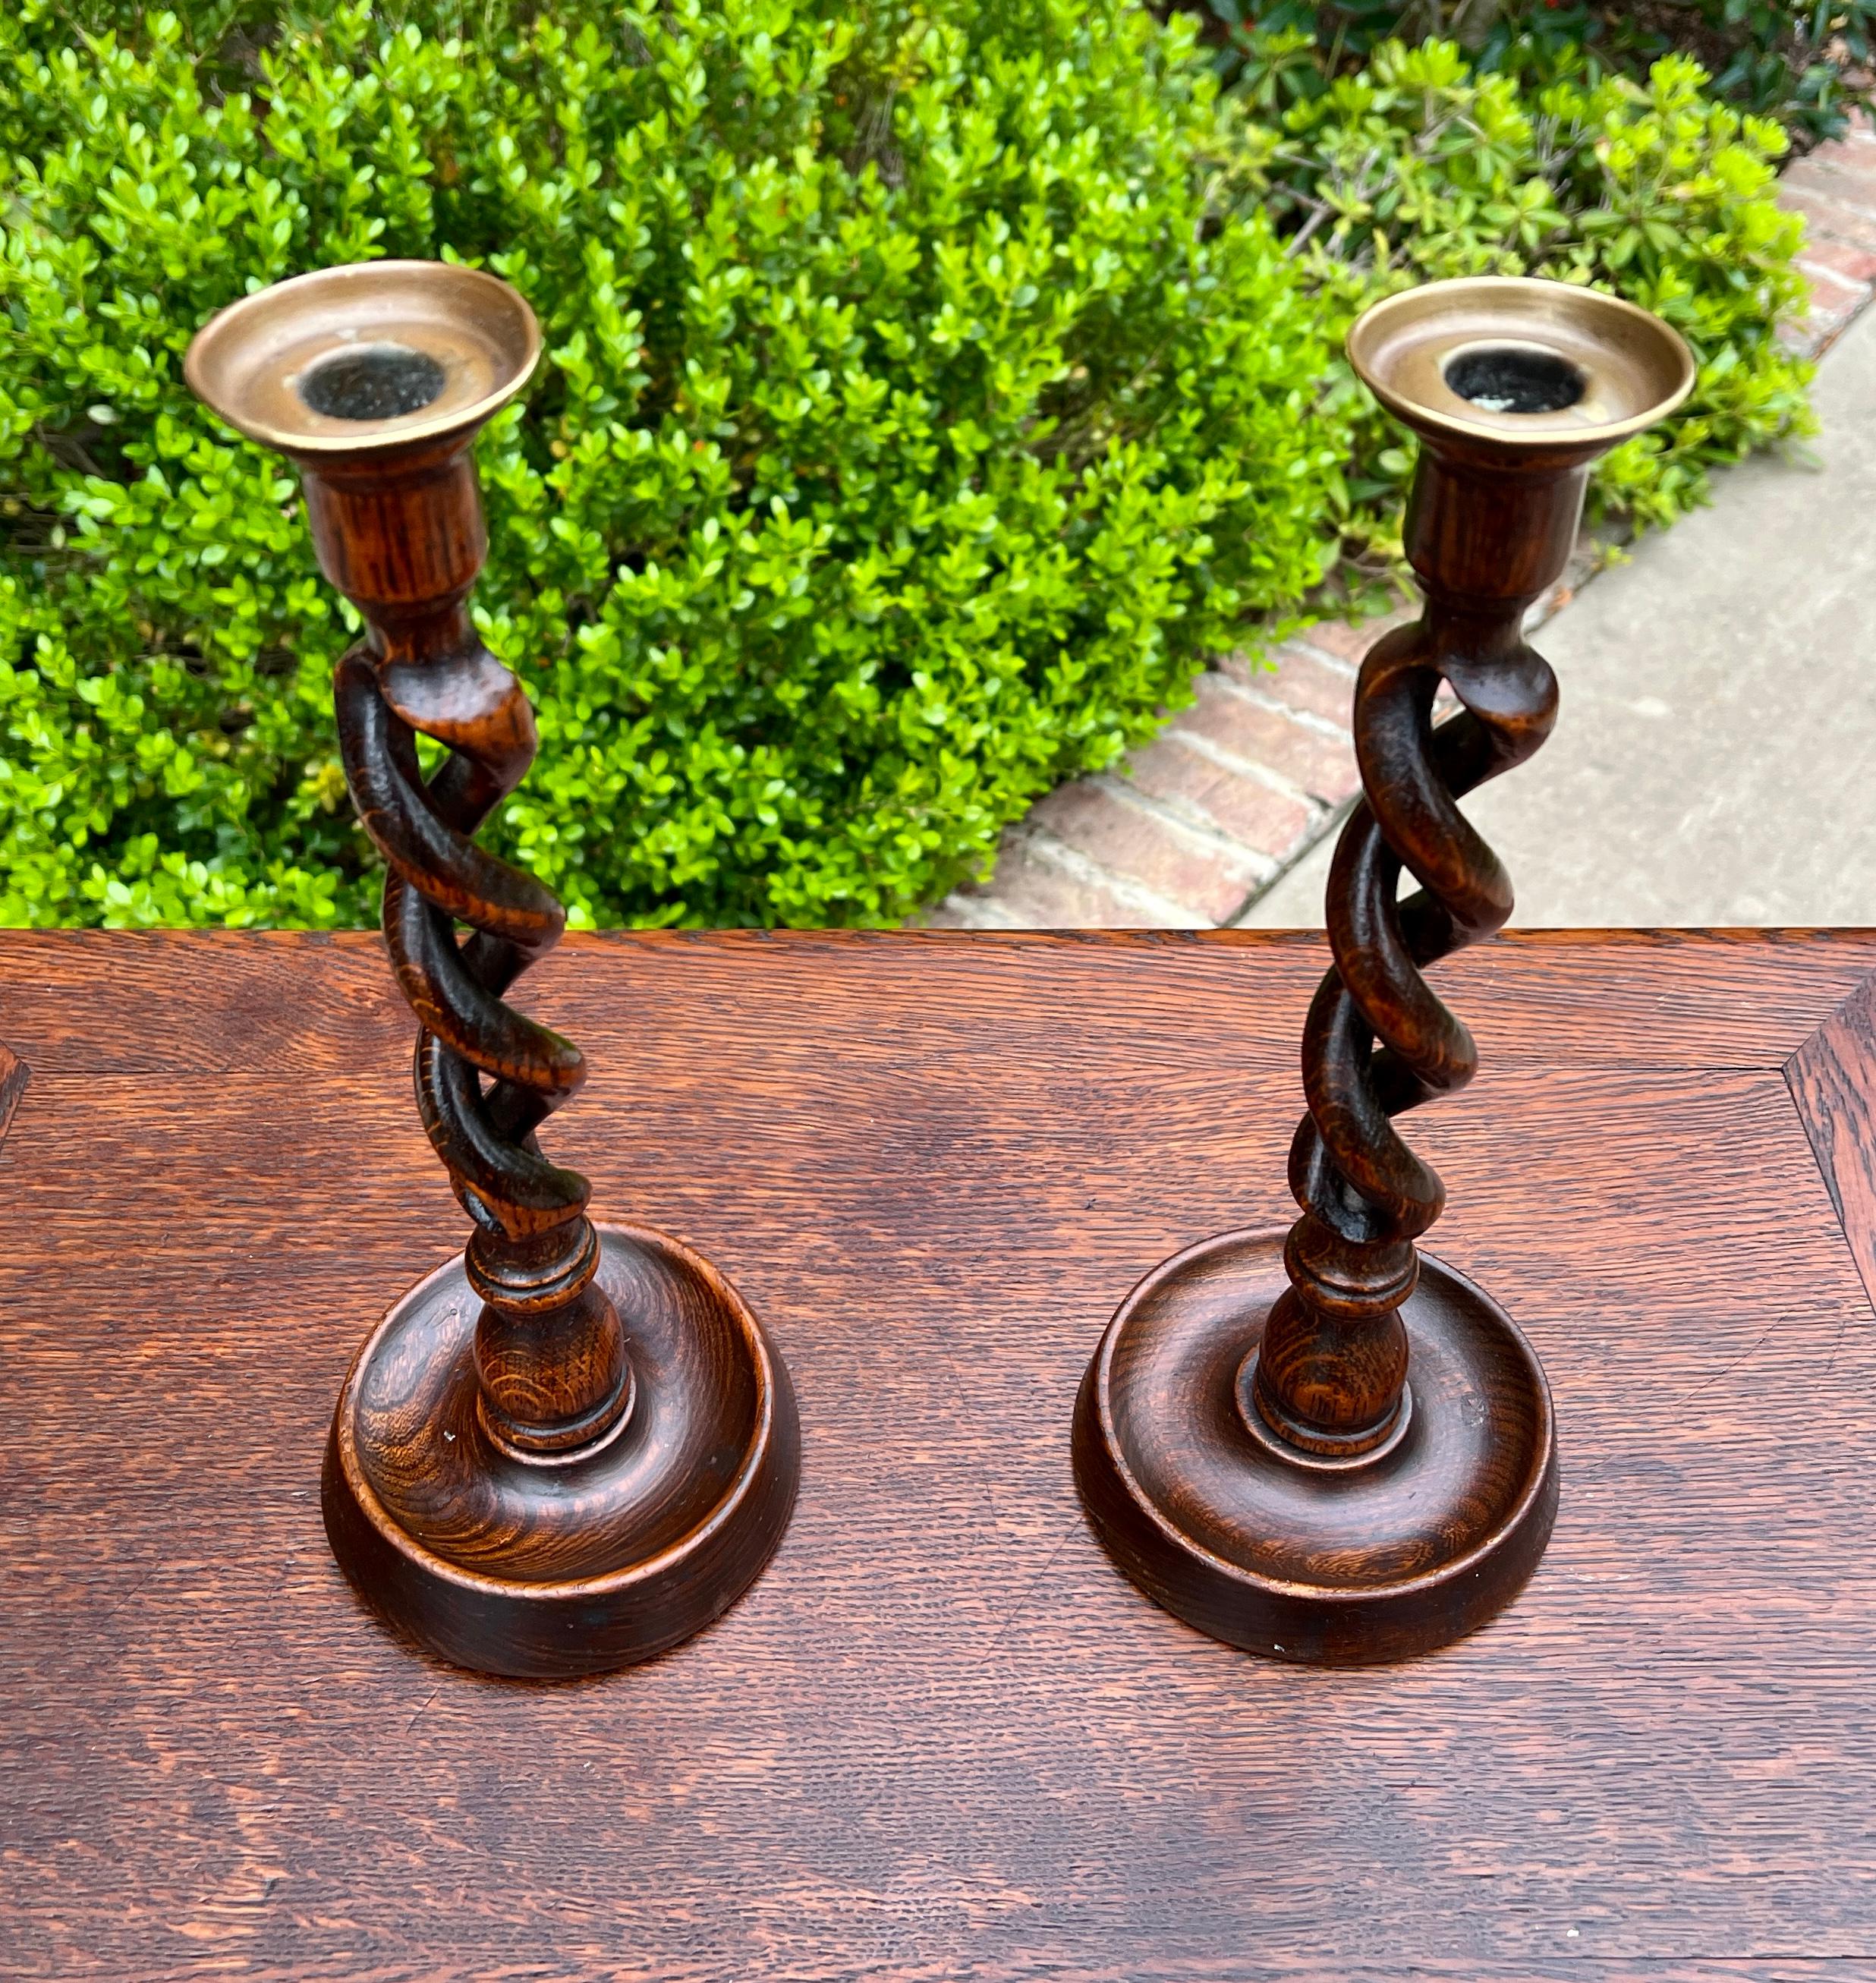 Antique chandeliers anglais ouverts à torsion d'orge Porte-bougies en chêne PAIR 12.5